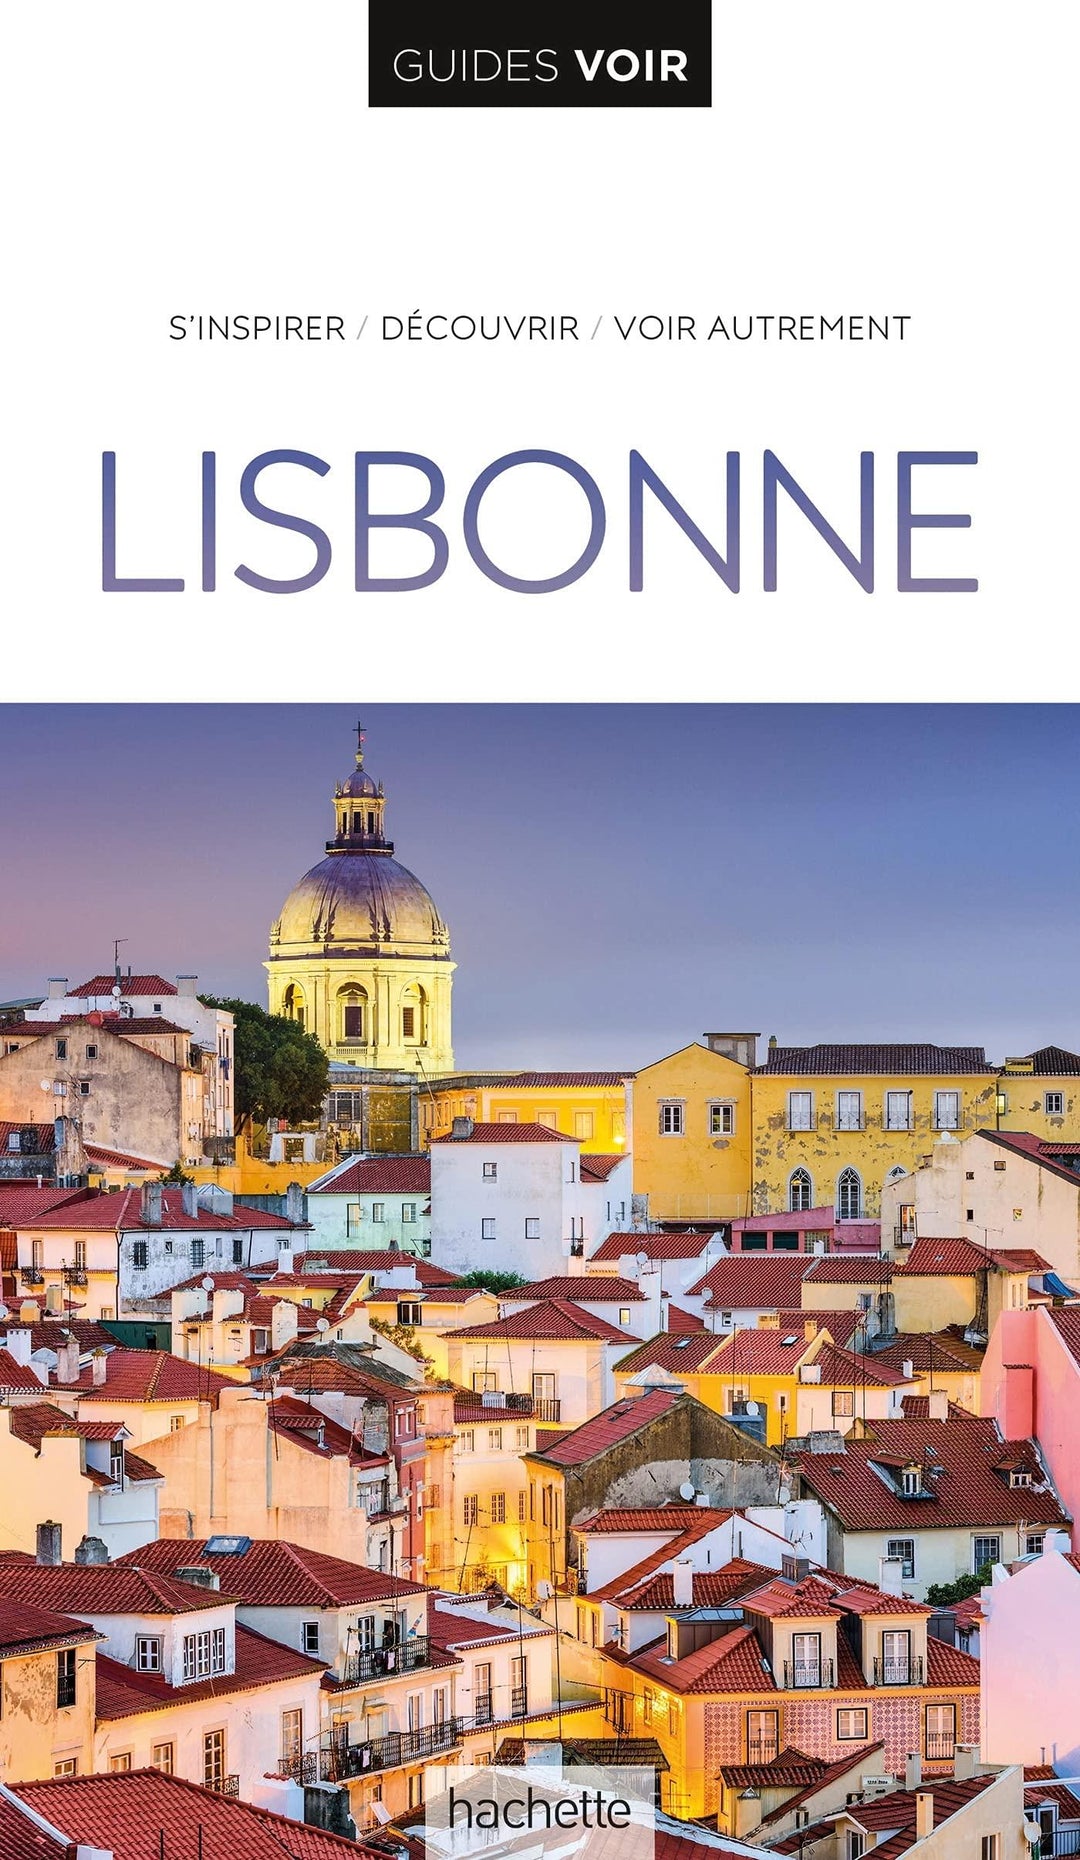 Guide de voyage - Lisbonne - Édition 2021 | Guides Voir guide de voyage Guides Voir 